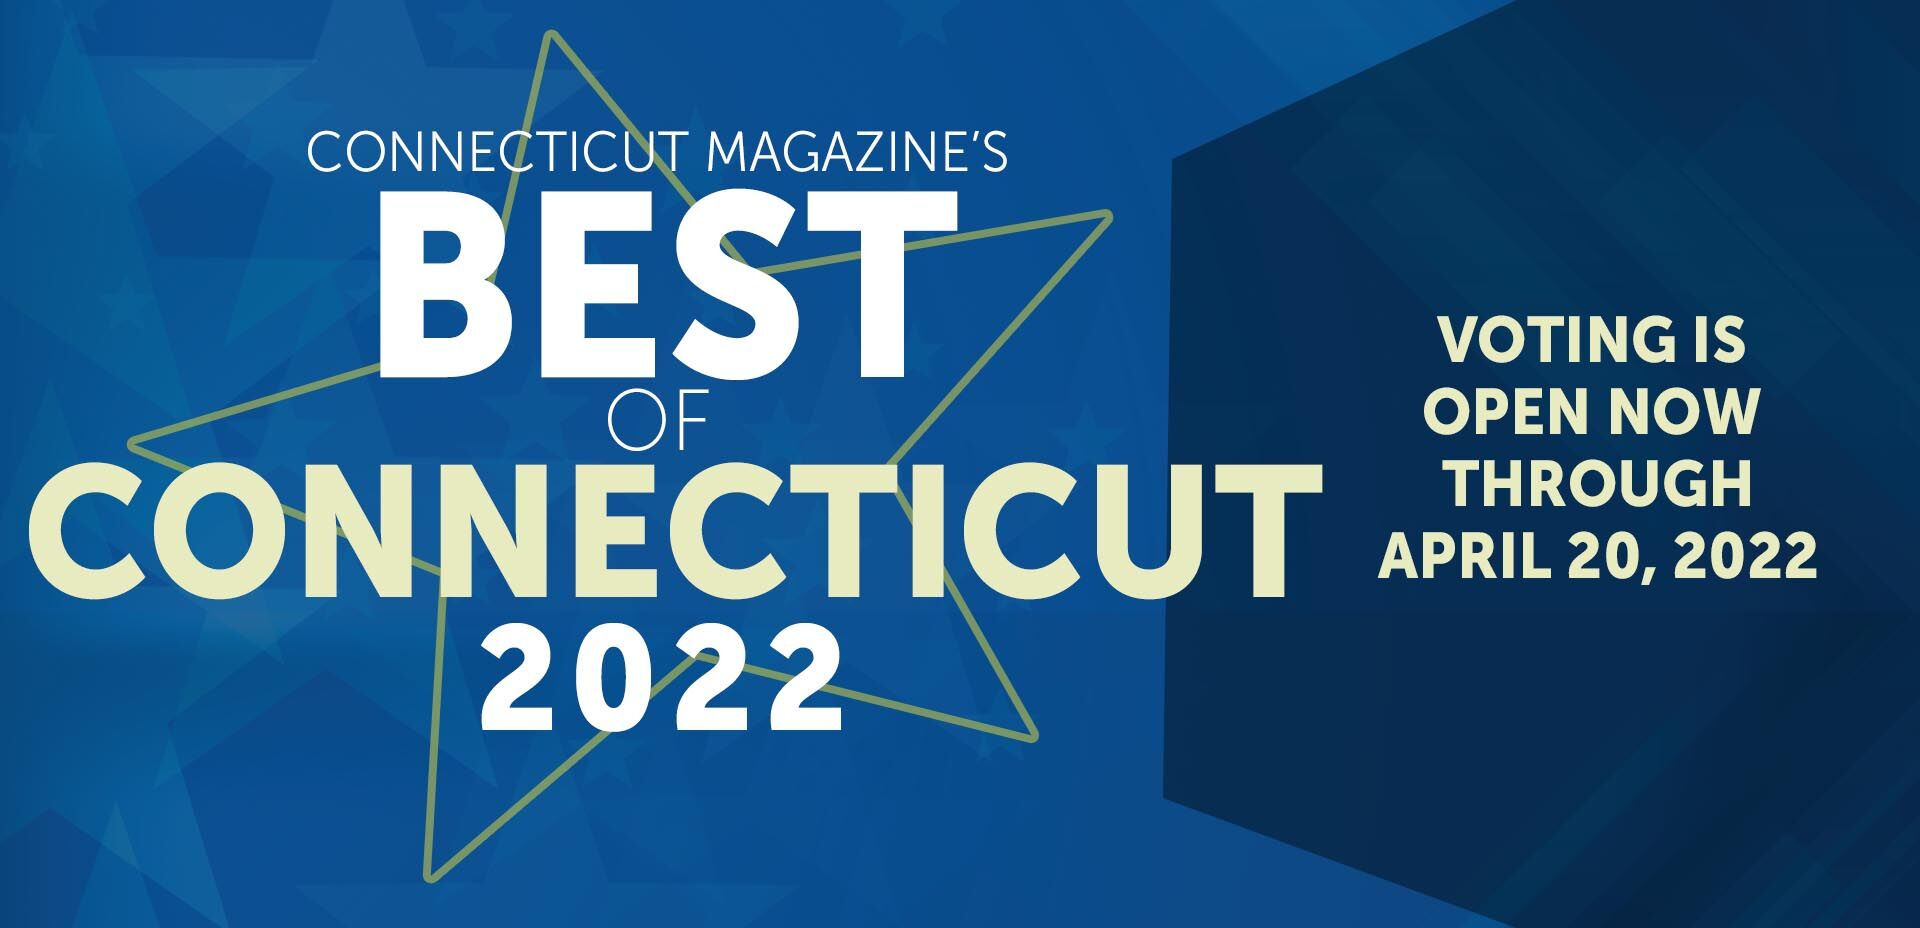 'Best of Connecticut' 2022 Readers' Survey